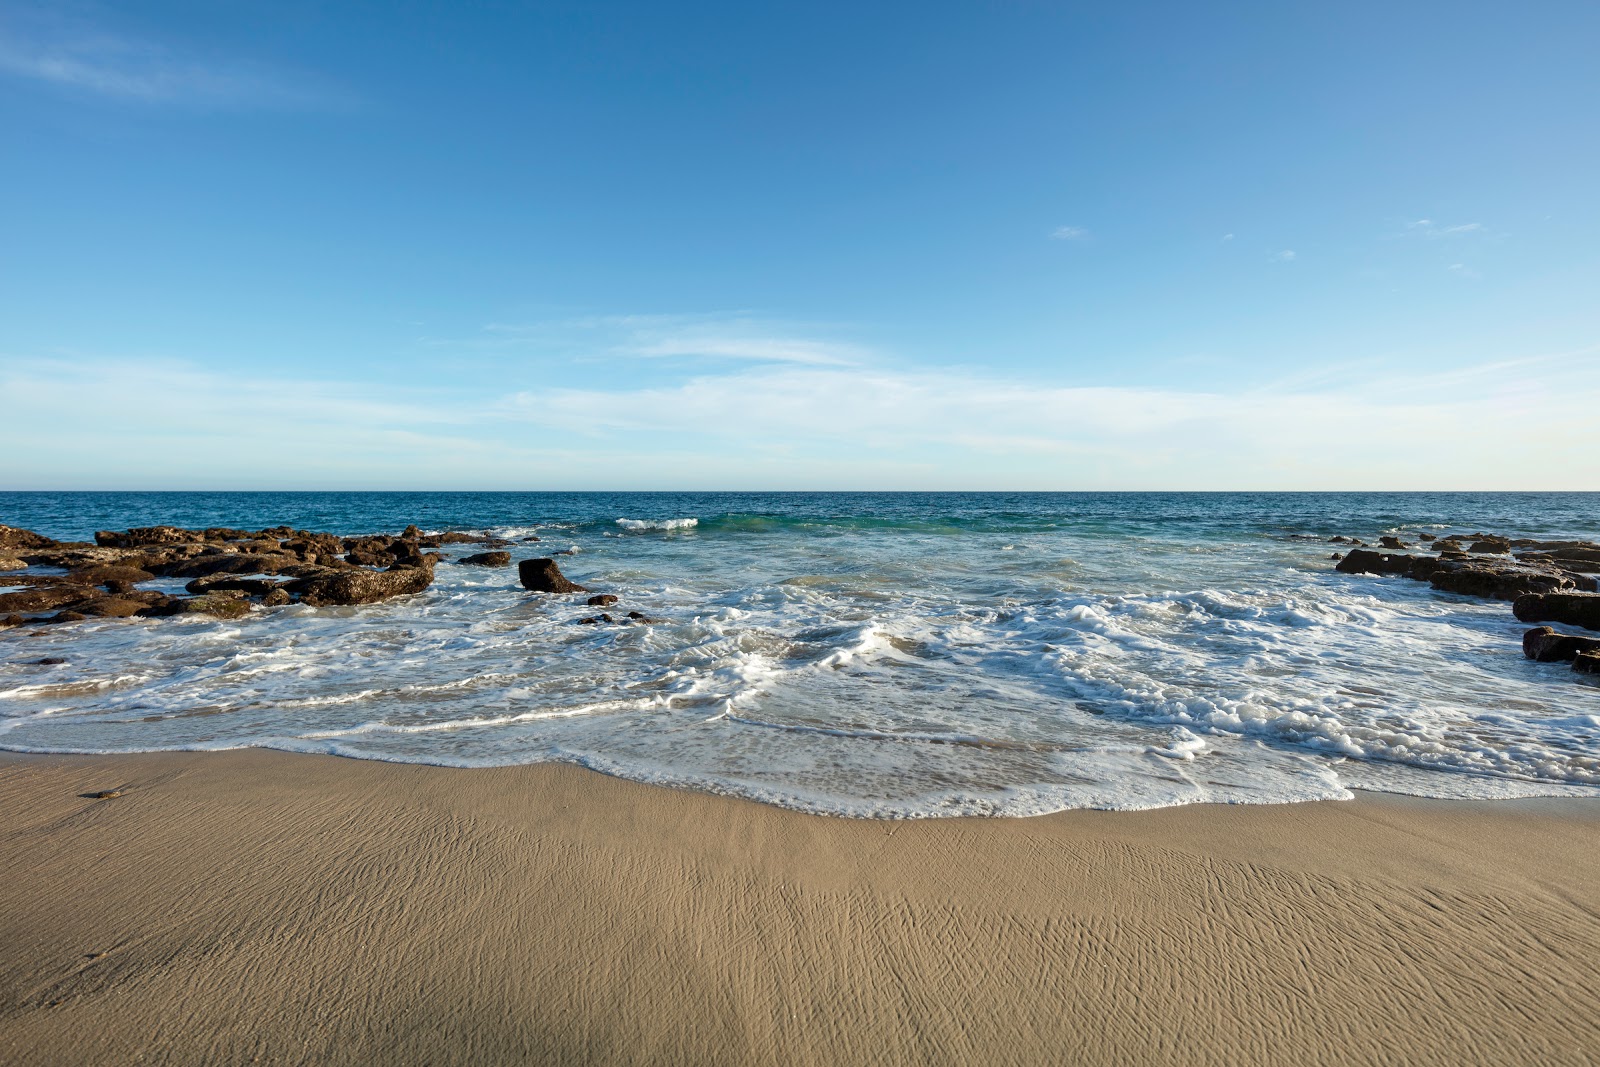 Foto af East Cape Beach - populært sted blandt afslapningskendere